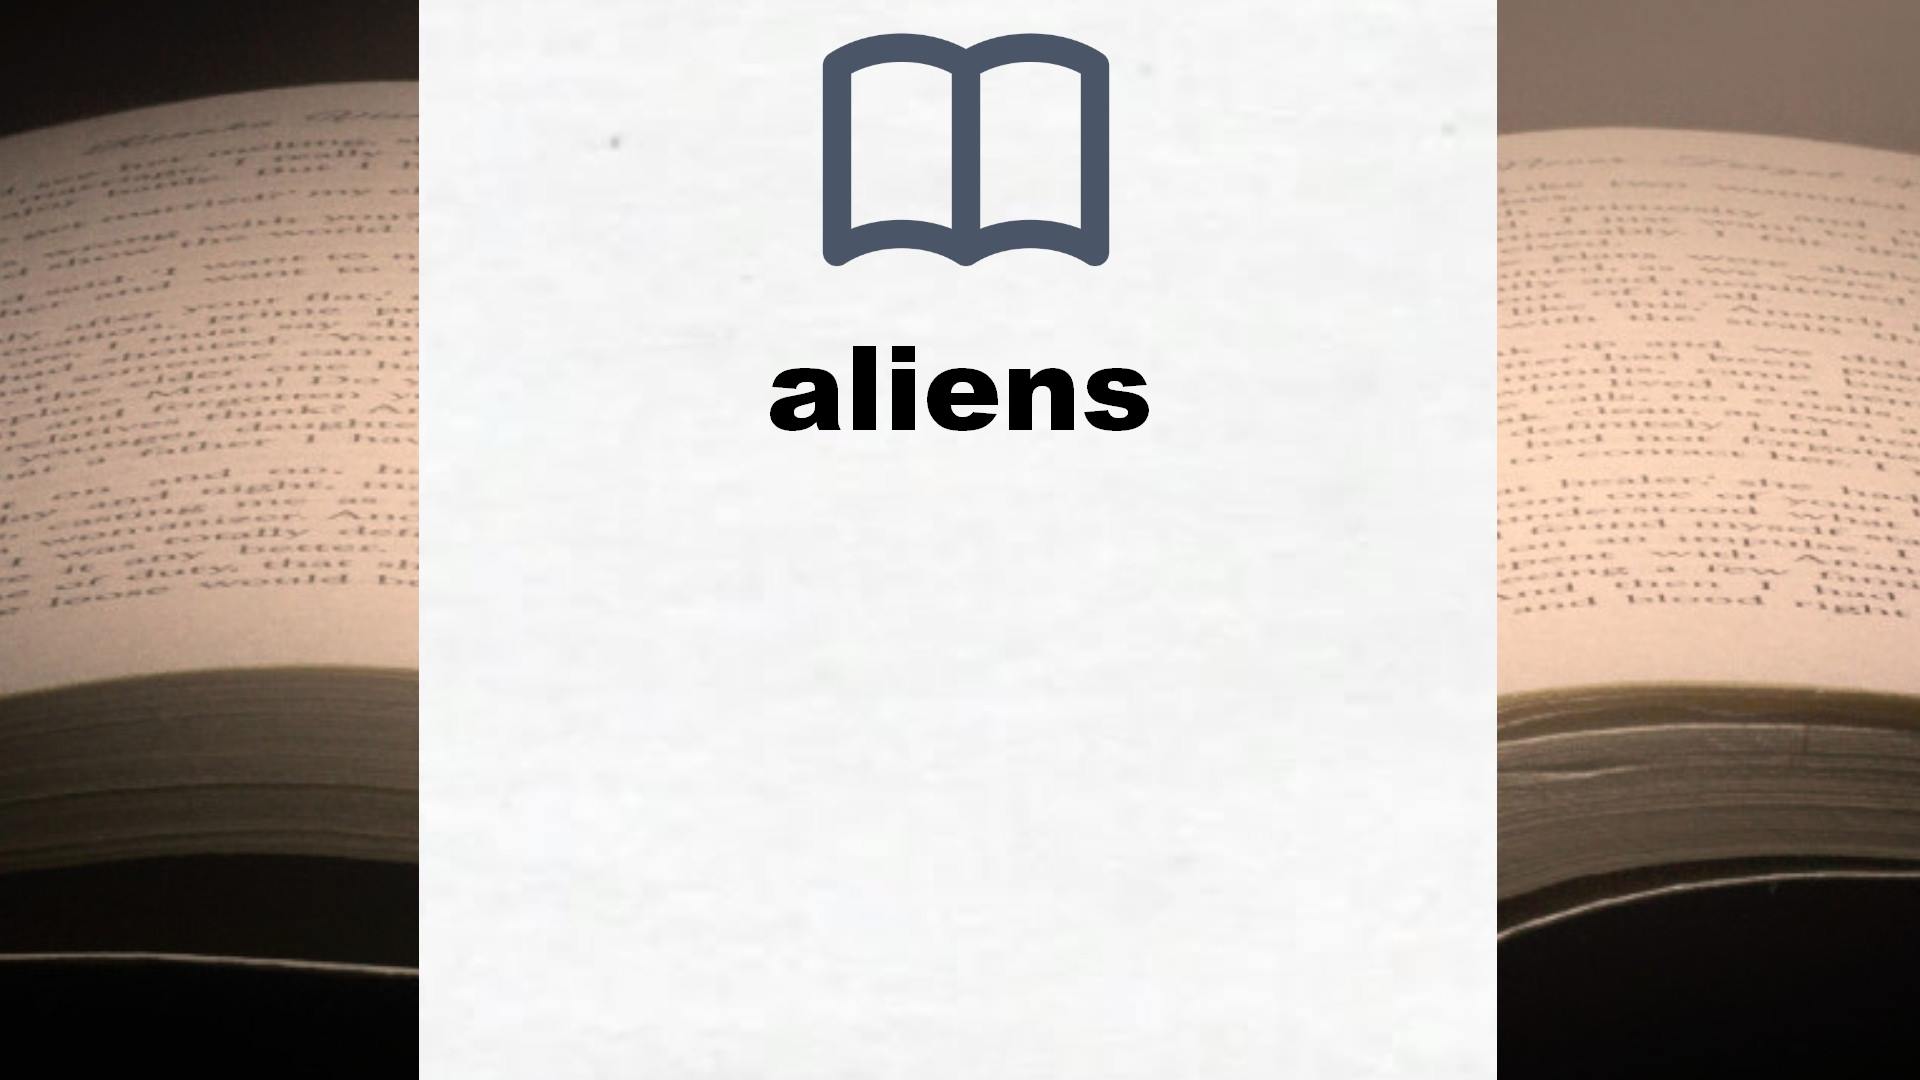 Libros sobre aliens